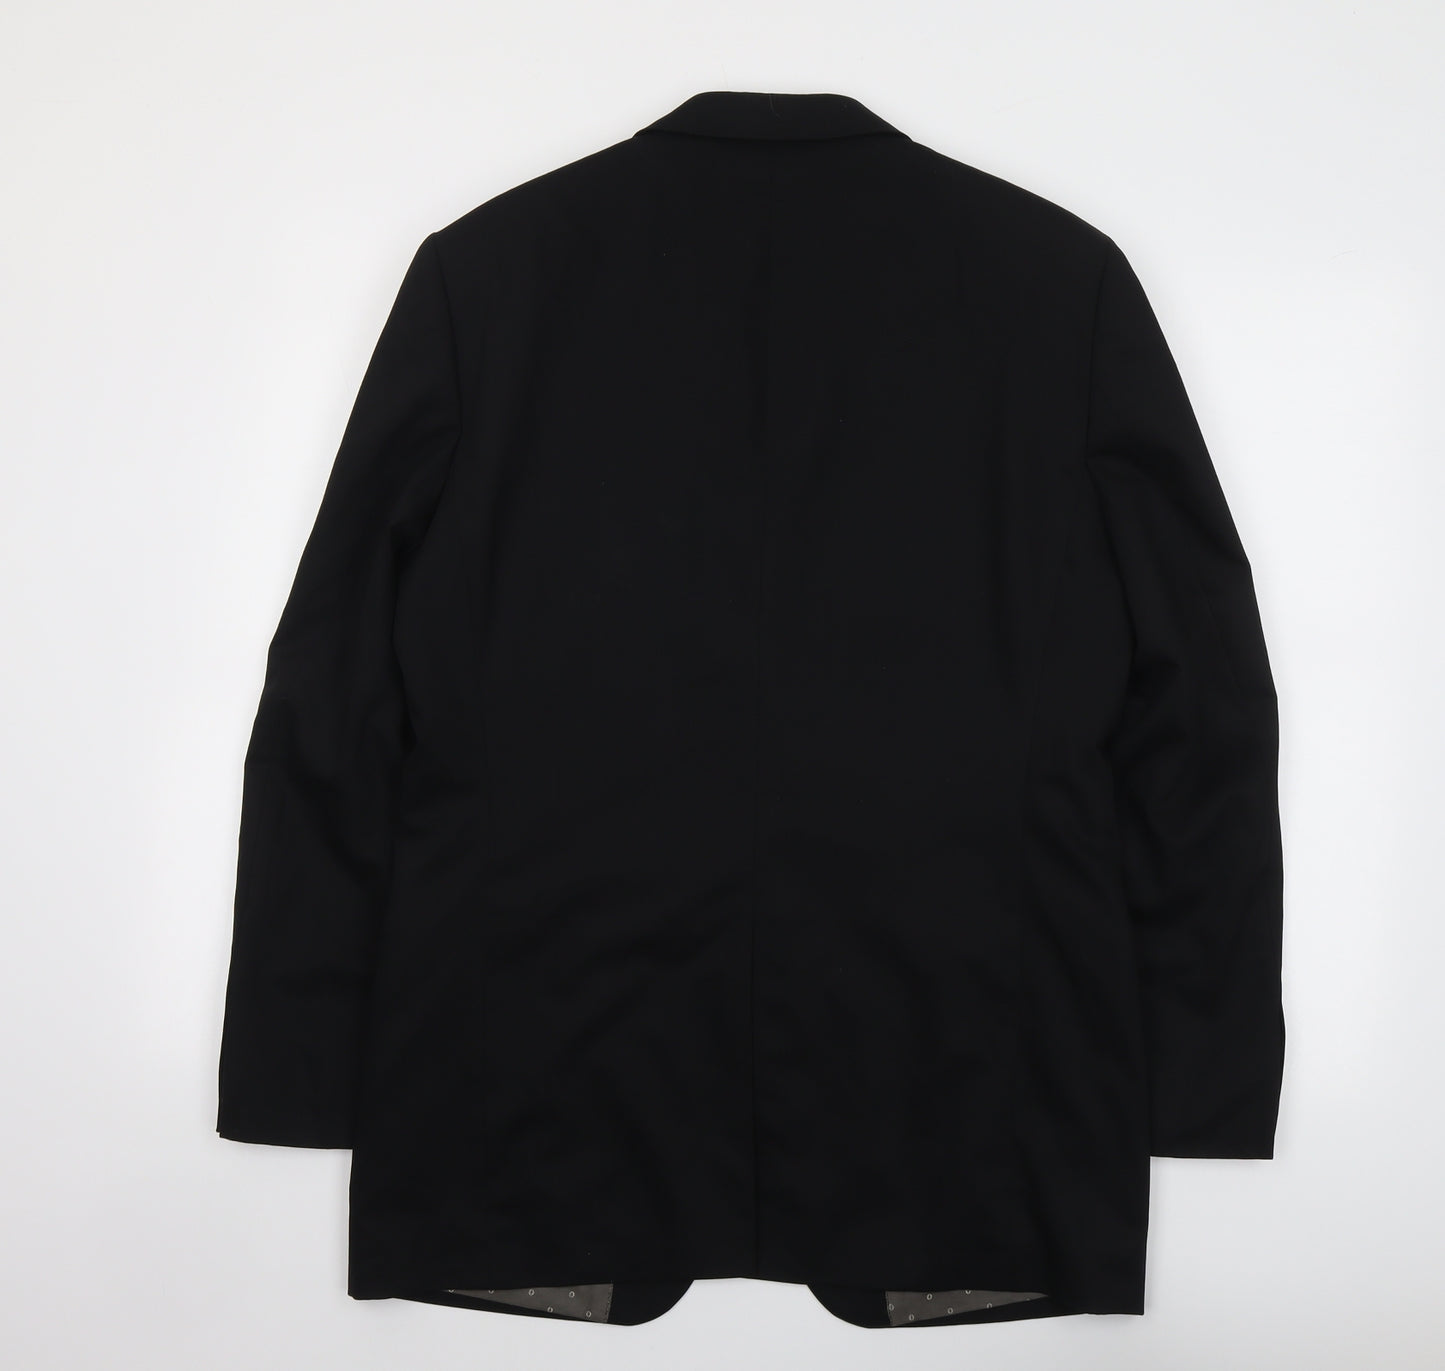 Ted Baker Mens Black Wool Jacket Suit Jacket Size 42 Regular